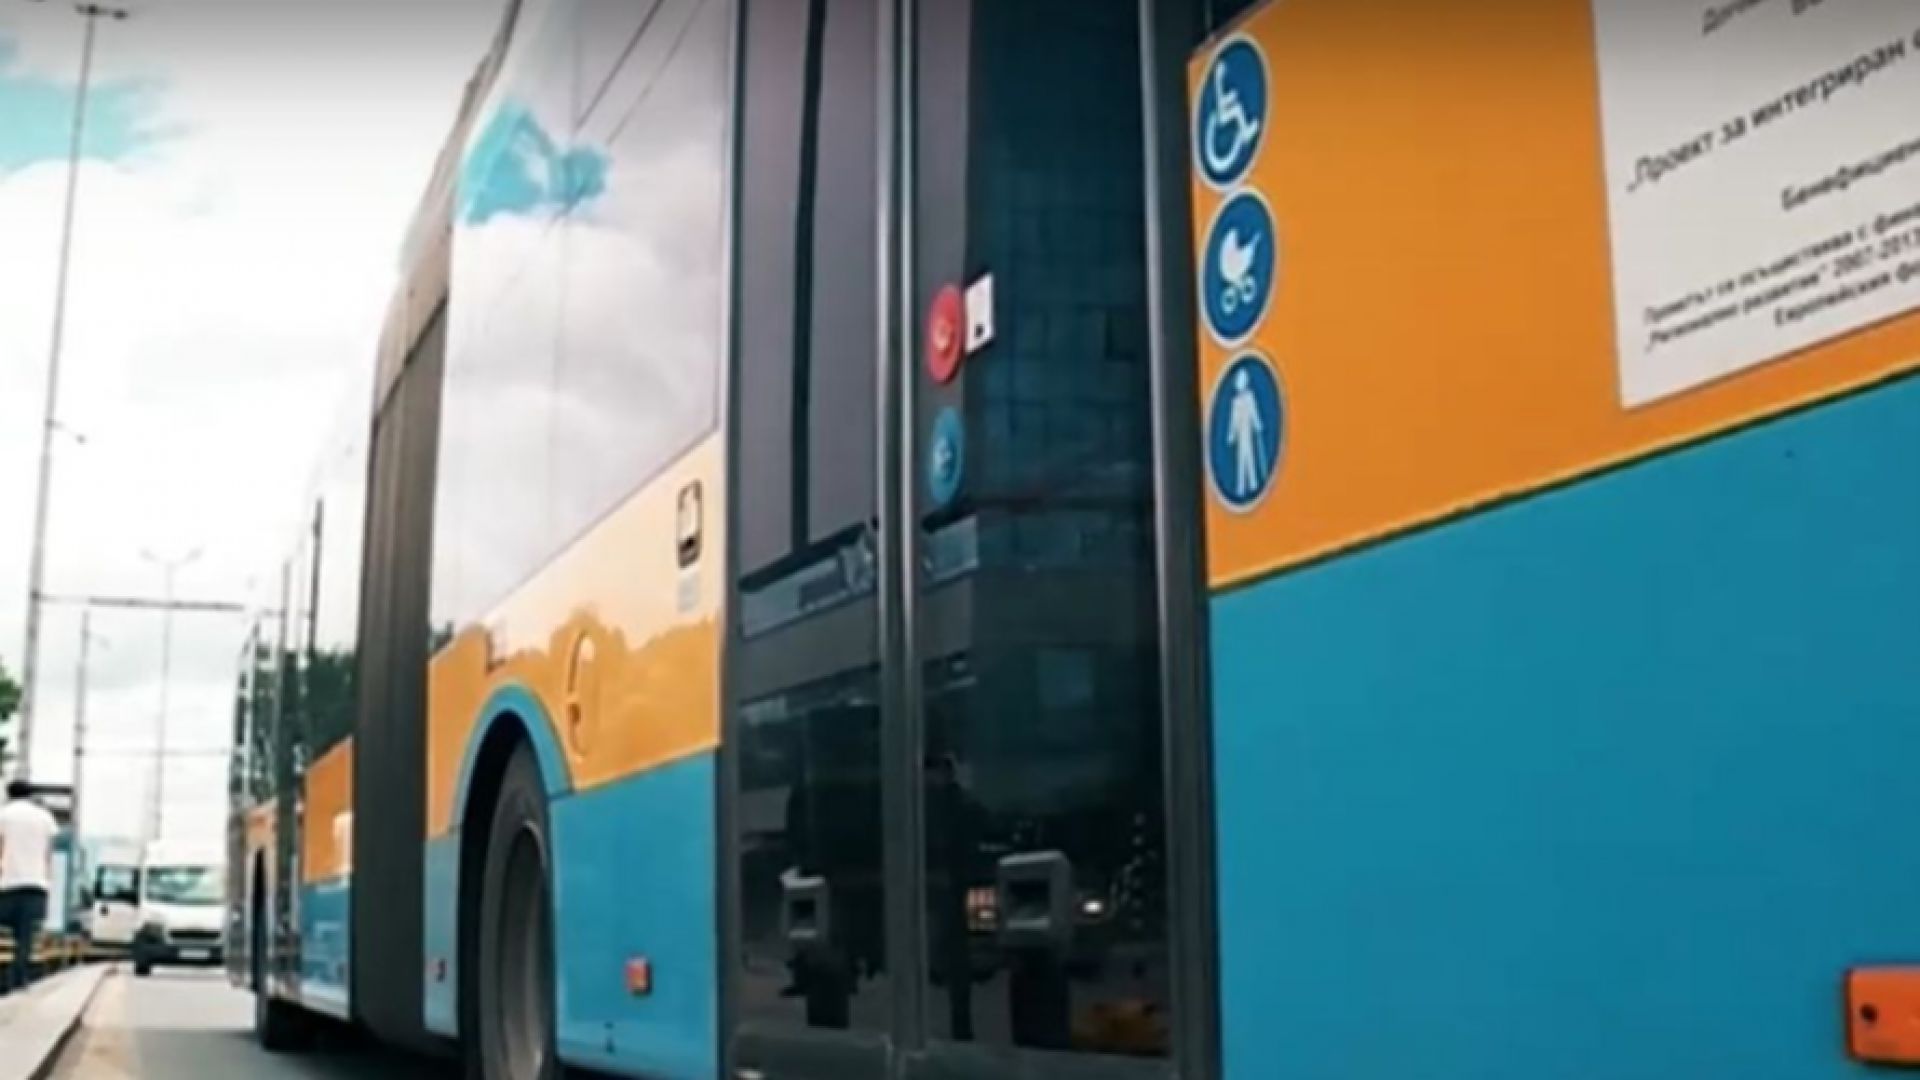 София остава без нощен градски транспорт до октомври